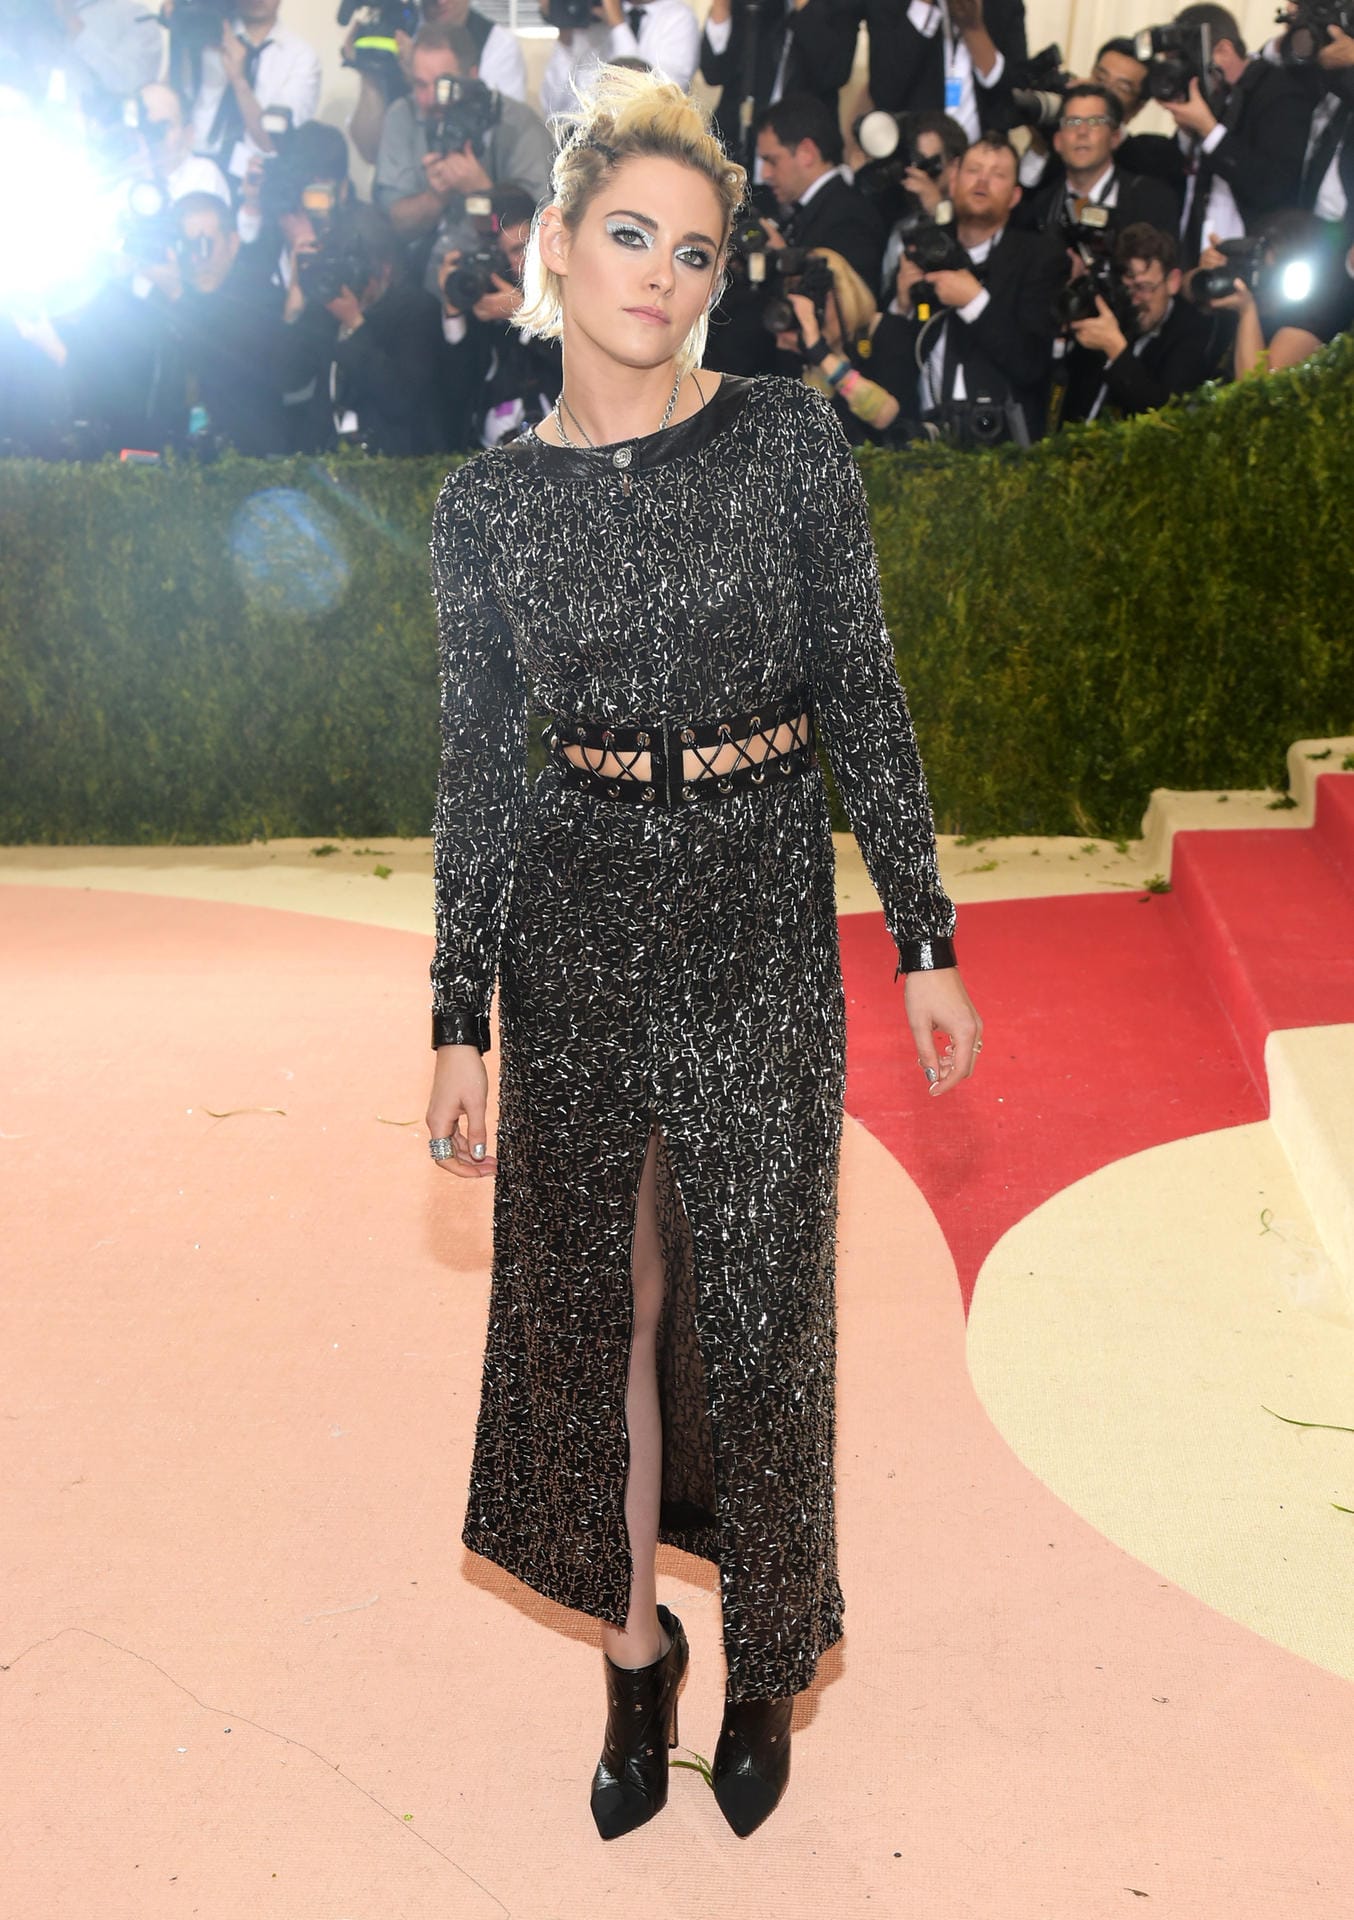 Kristen Stewart als Lagerfeld-Muse natürlich in Chanel. Wo das herkam, hätte es aber sicherlich auch schickere Kleider gegeben...